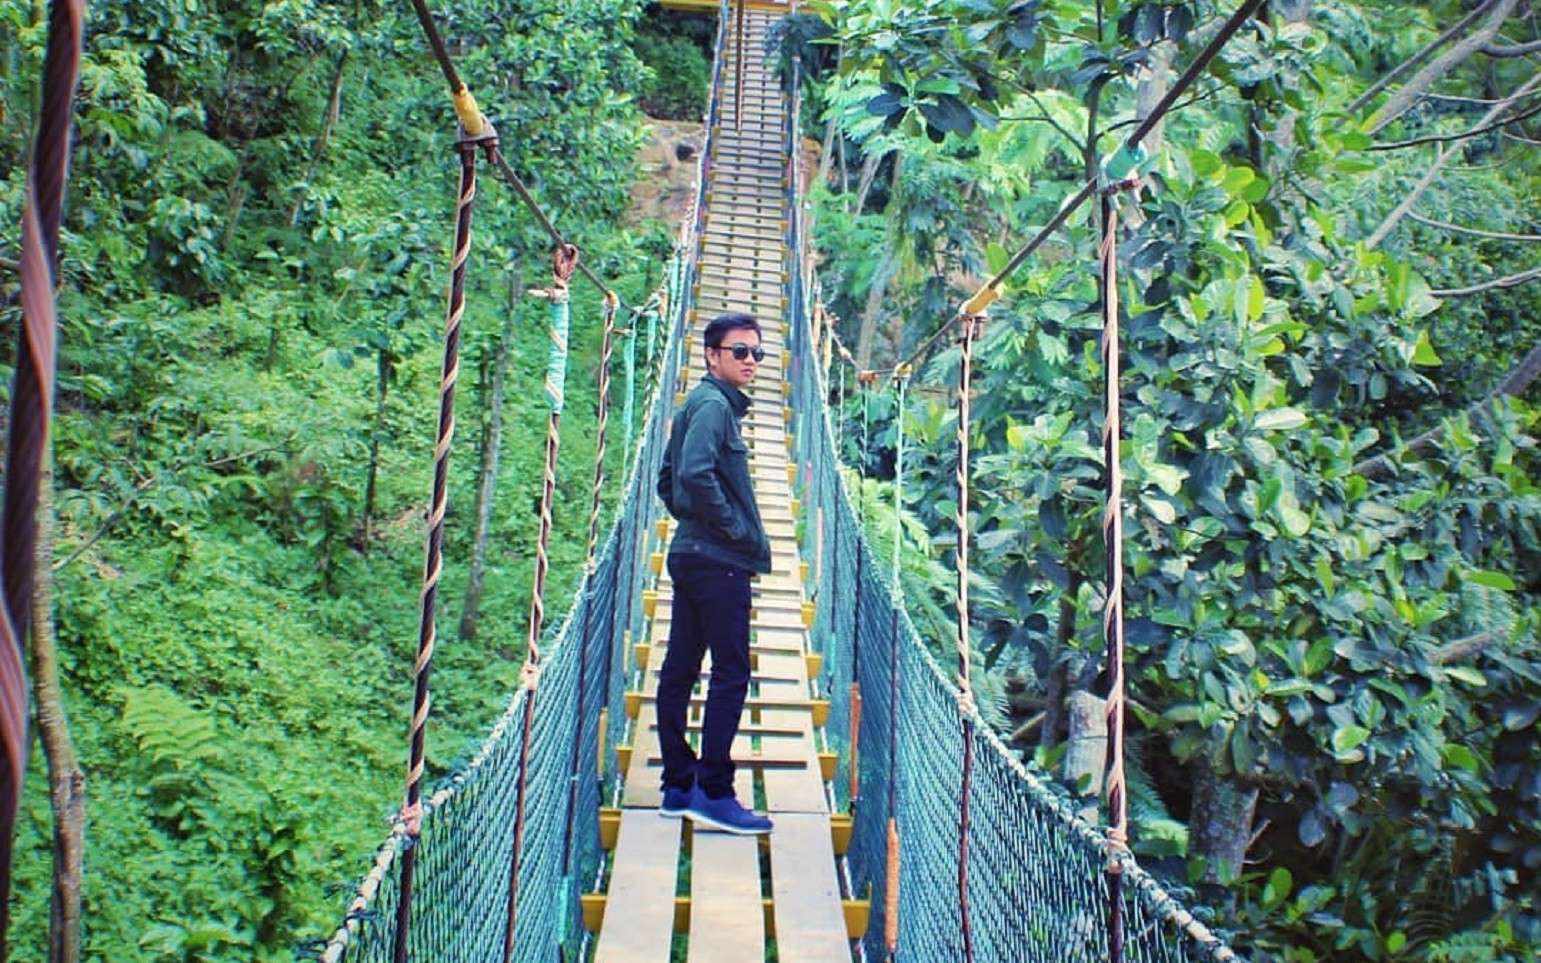 Jembatan Gantung di area wisata Curug Ciherang Bogor ini merupakan salah satu spot foto favorit